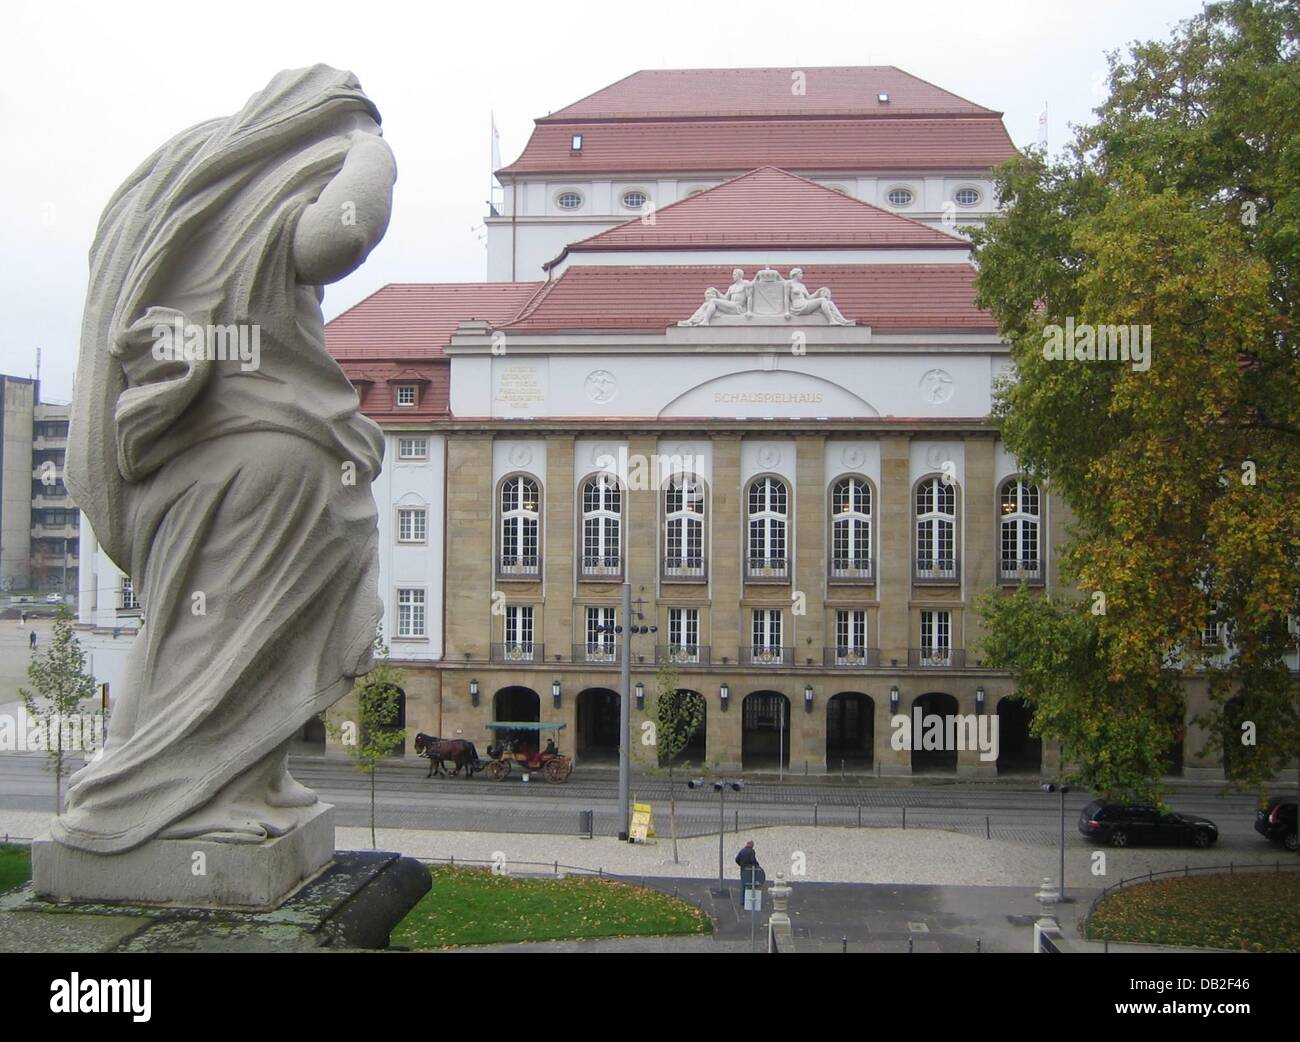 La imagen muestra una estatua en la parte frontal de la Schauspielhaus en Dresden, Alemania, 27 de octubre de 2007. Foto: Beate Schleep Foto de stock